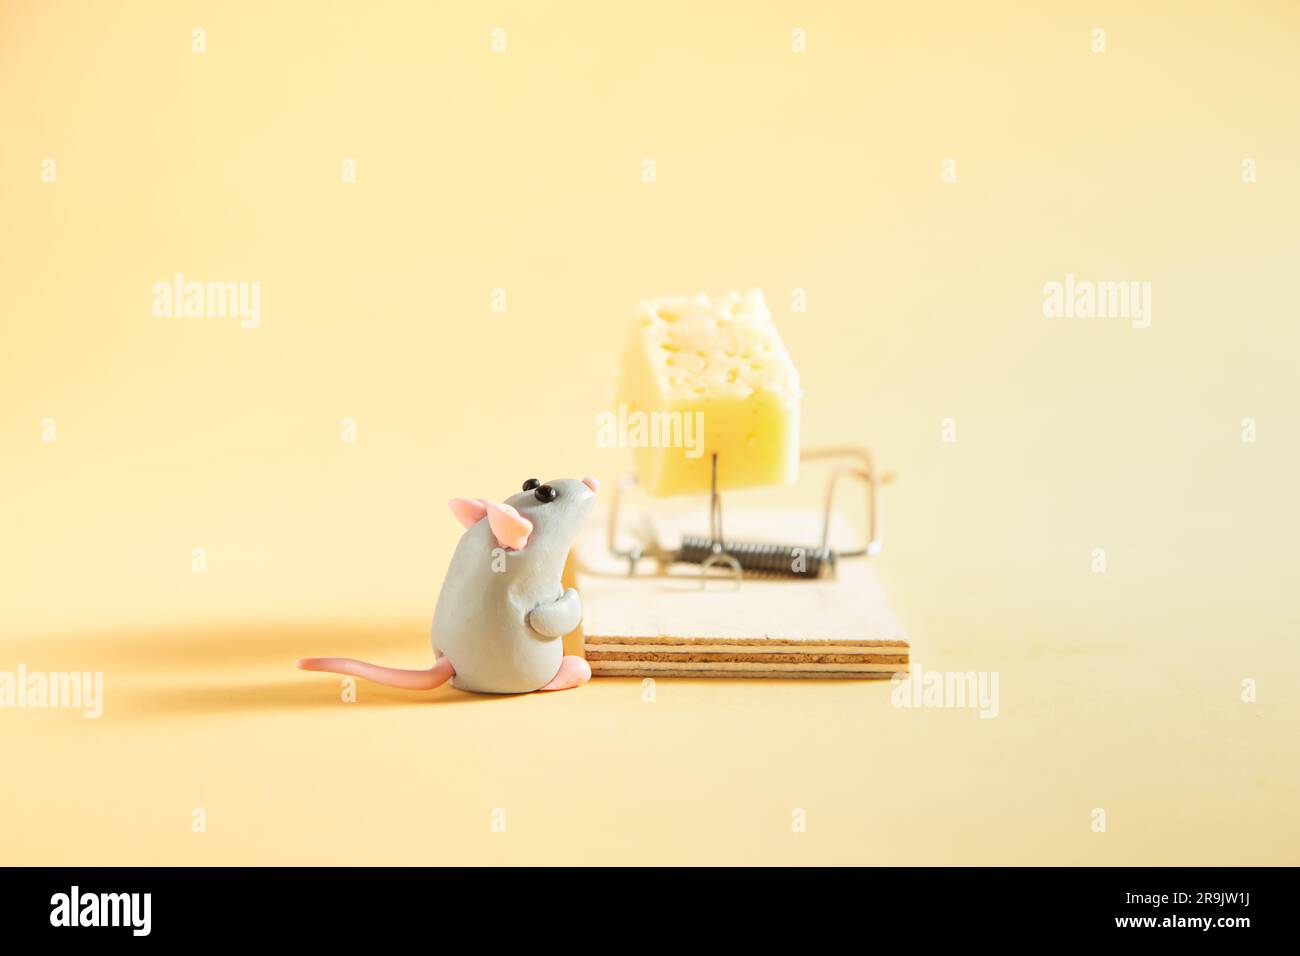 Eine kleine, graue Plastikmaus sieht sich ein Stück Käse in einer Mausefalle an. Beiger Hintergrund. Stockfoto